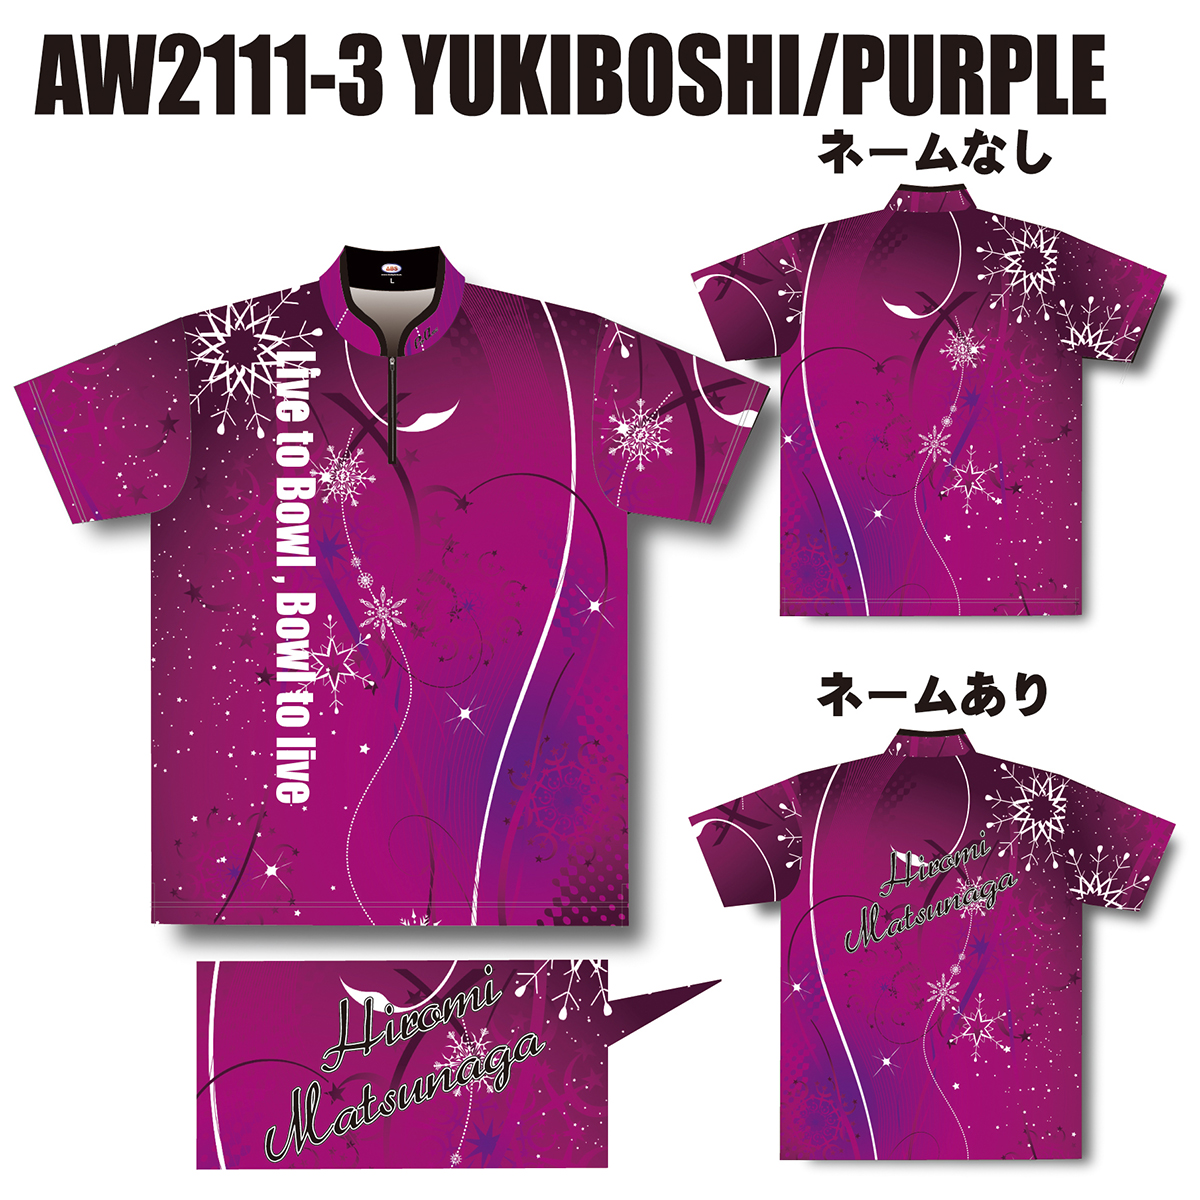 2021ウインターモデル(AW2111-3 YUKIBOSHI/PURPLE)